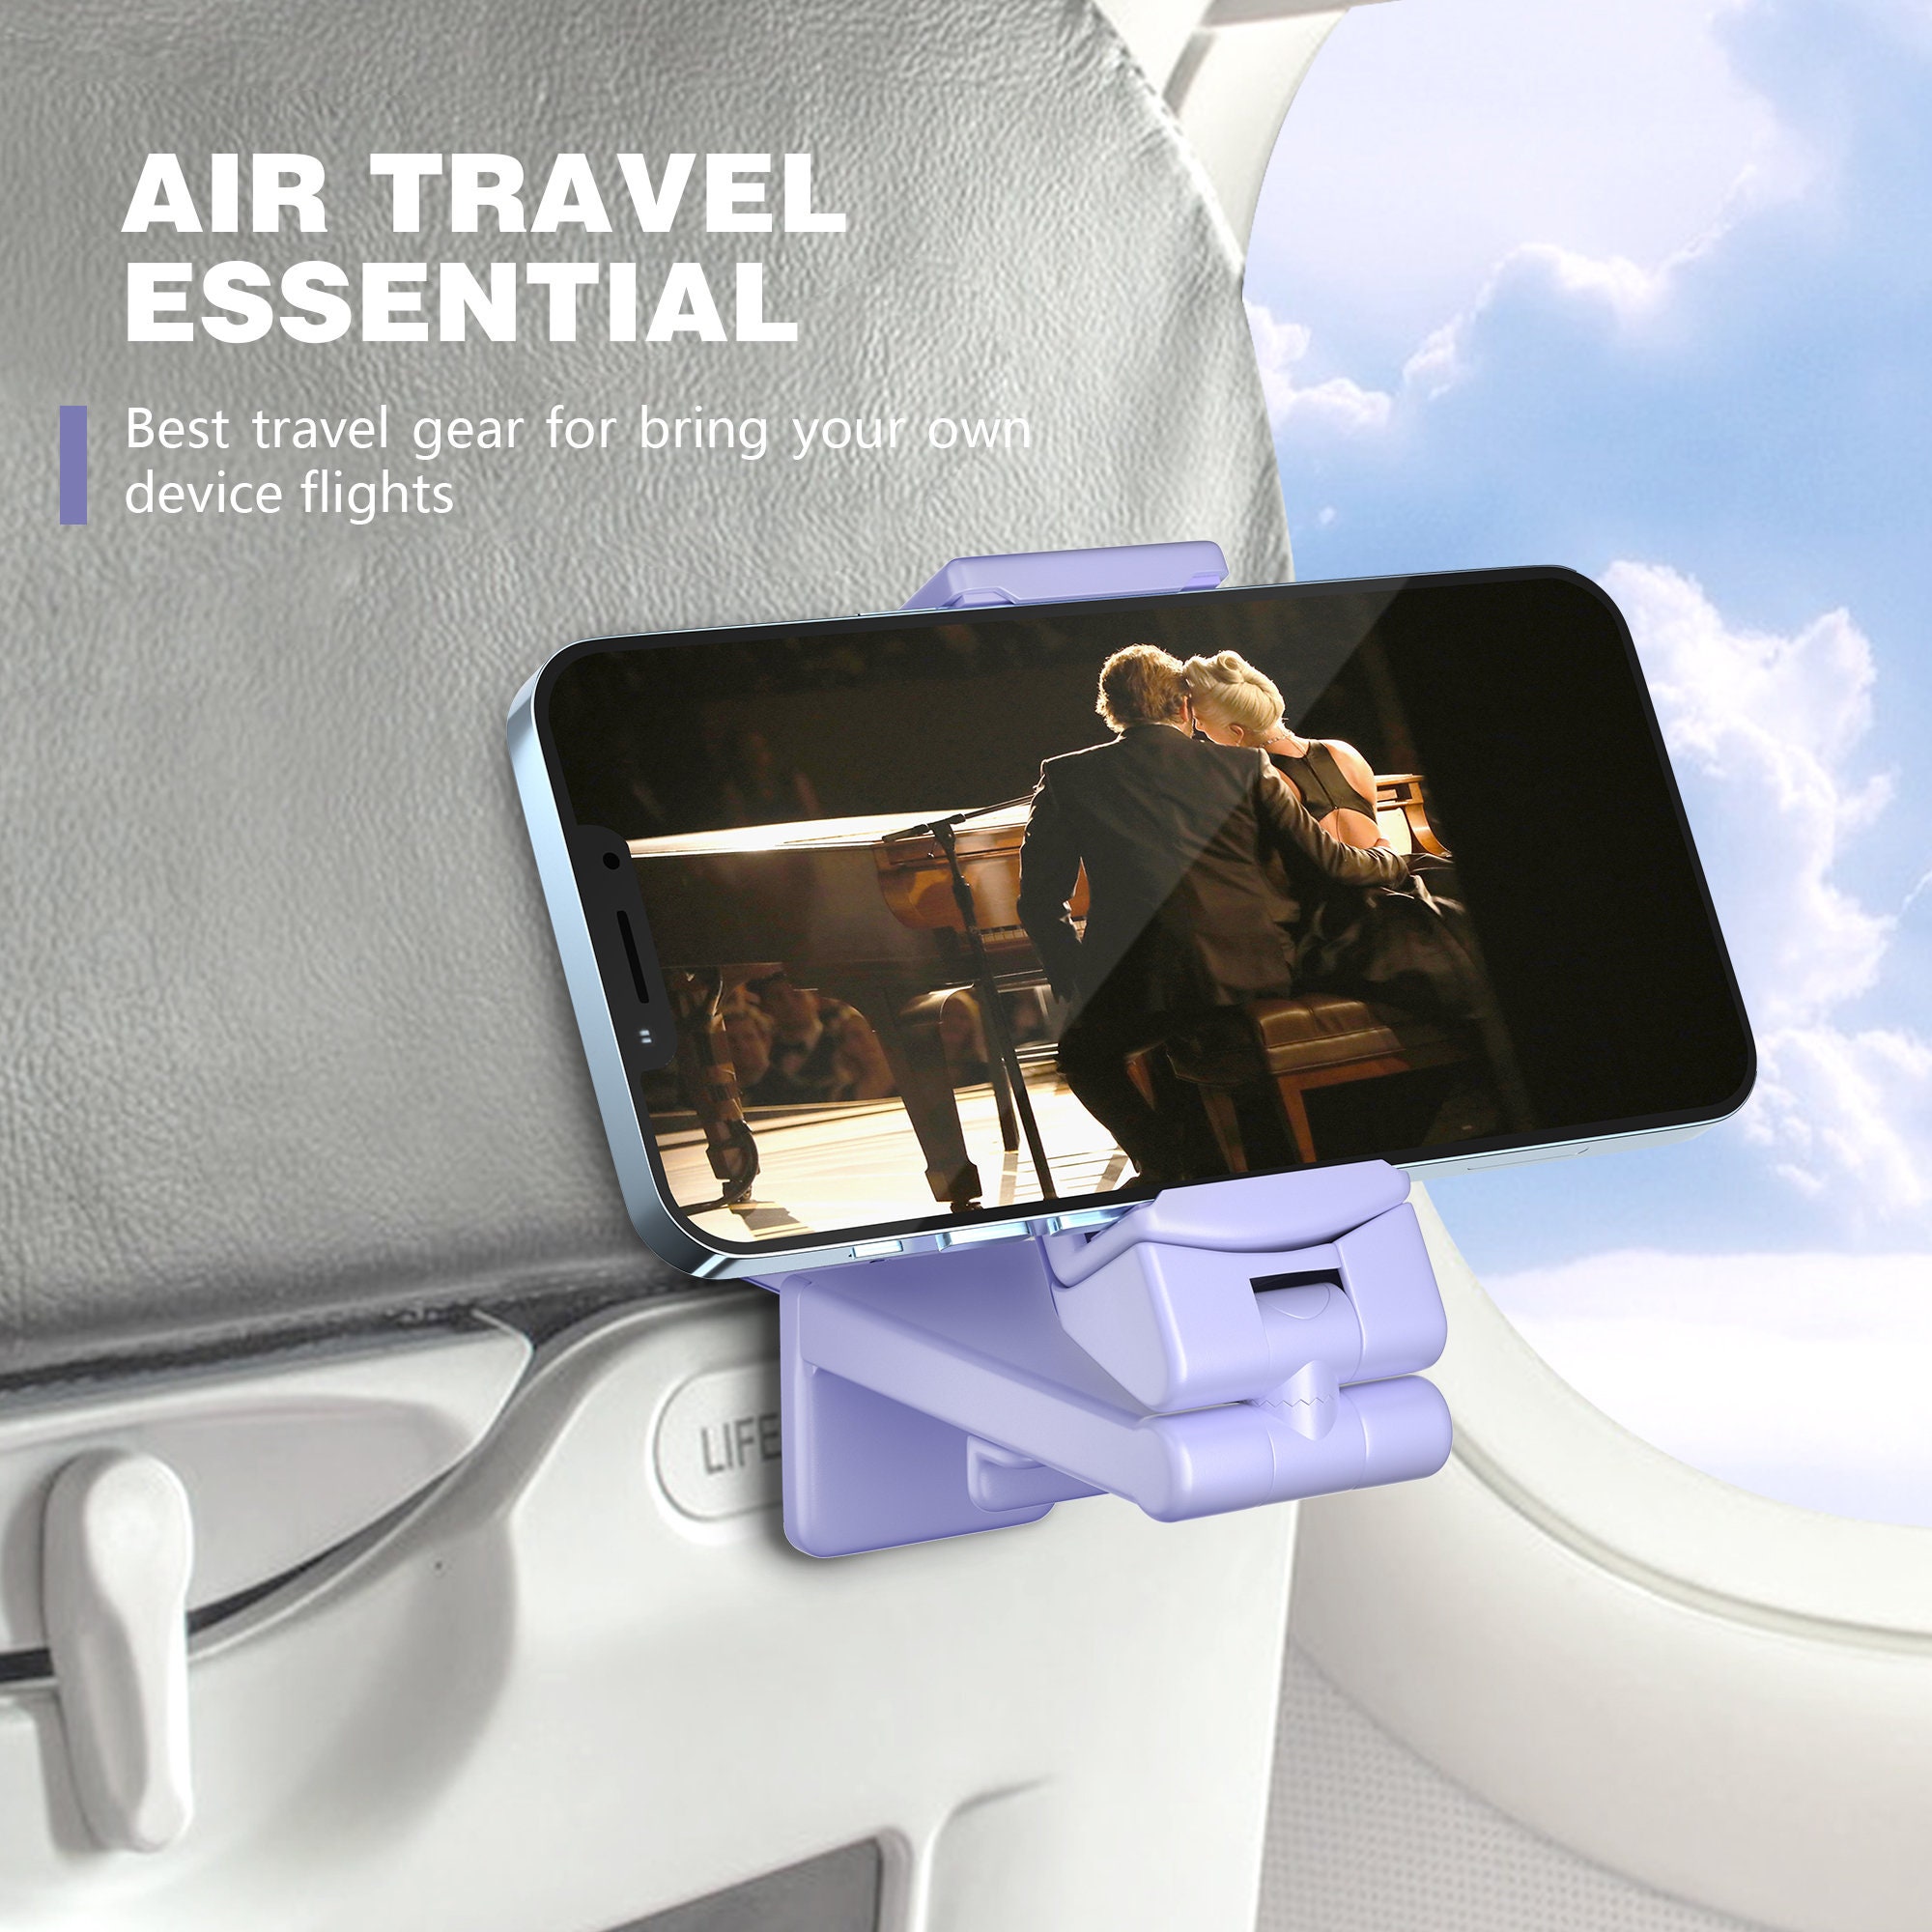 Travel Essential Flugzeug-Handyhalterung für Ihre eigenen